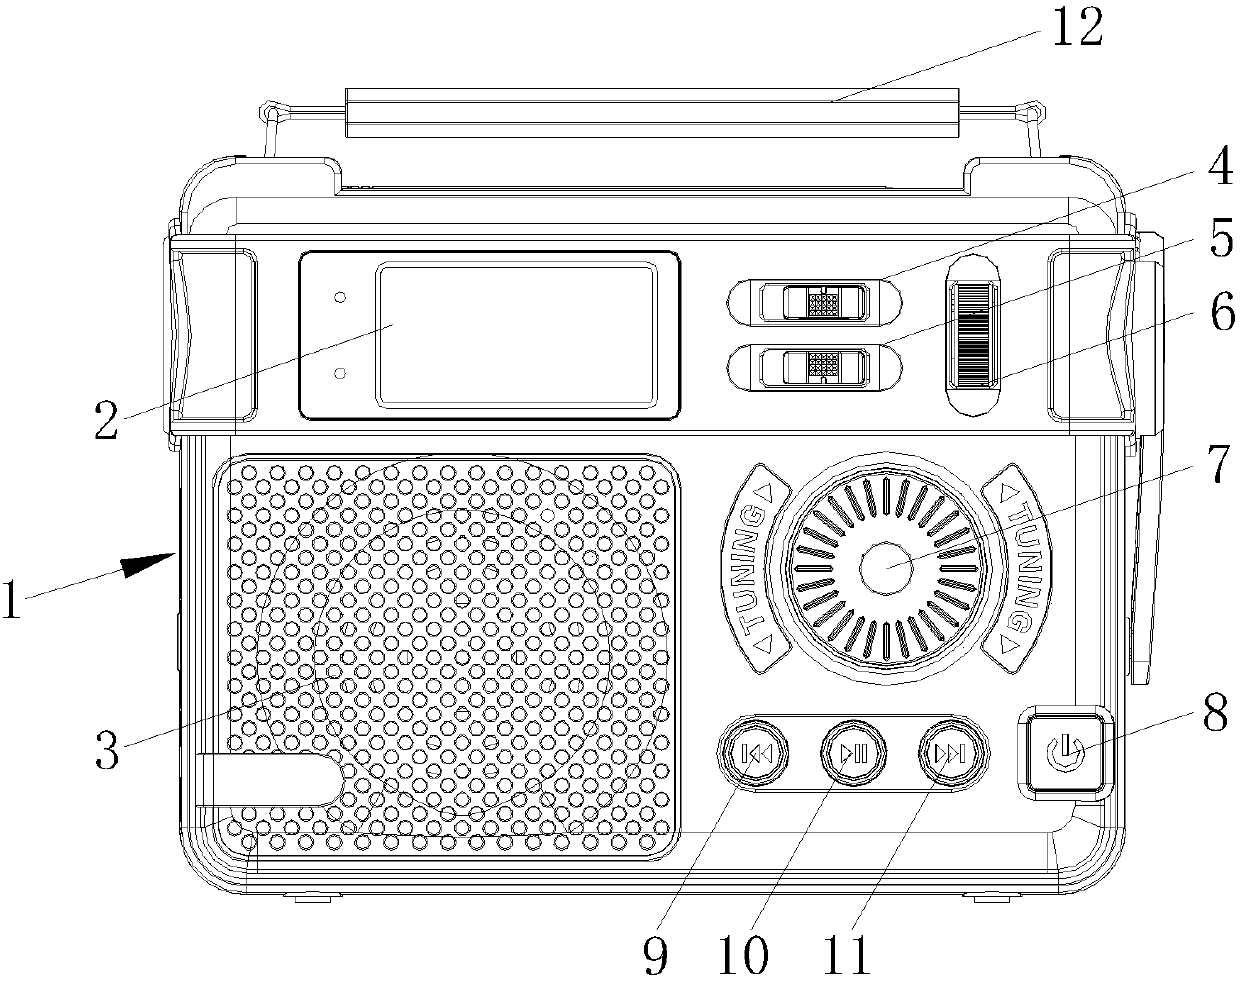 Radio device